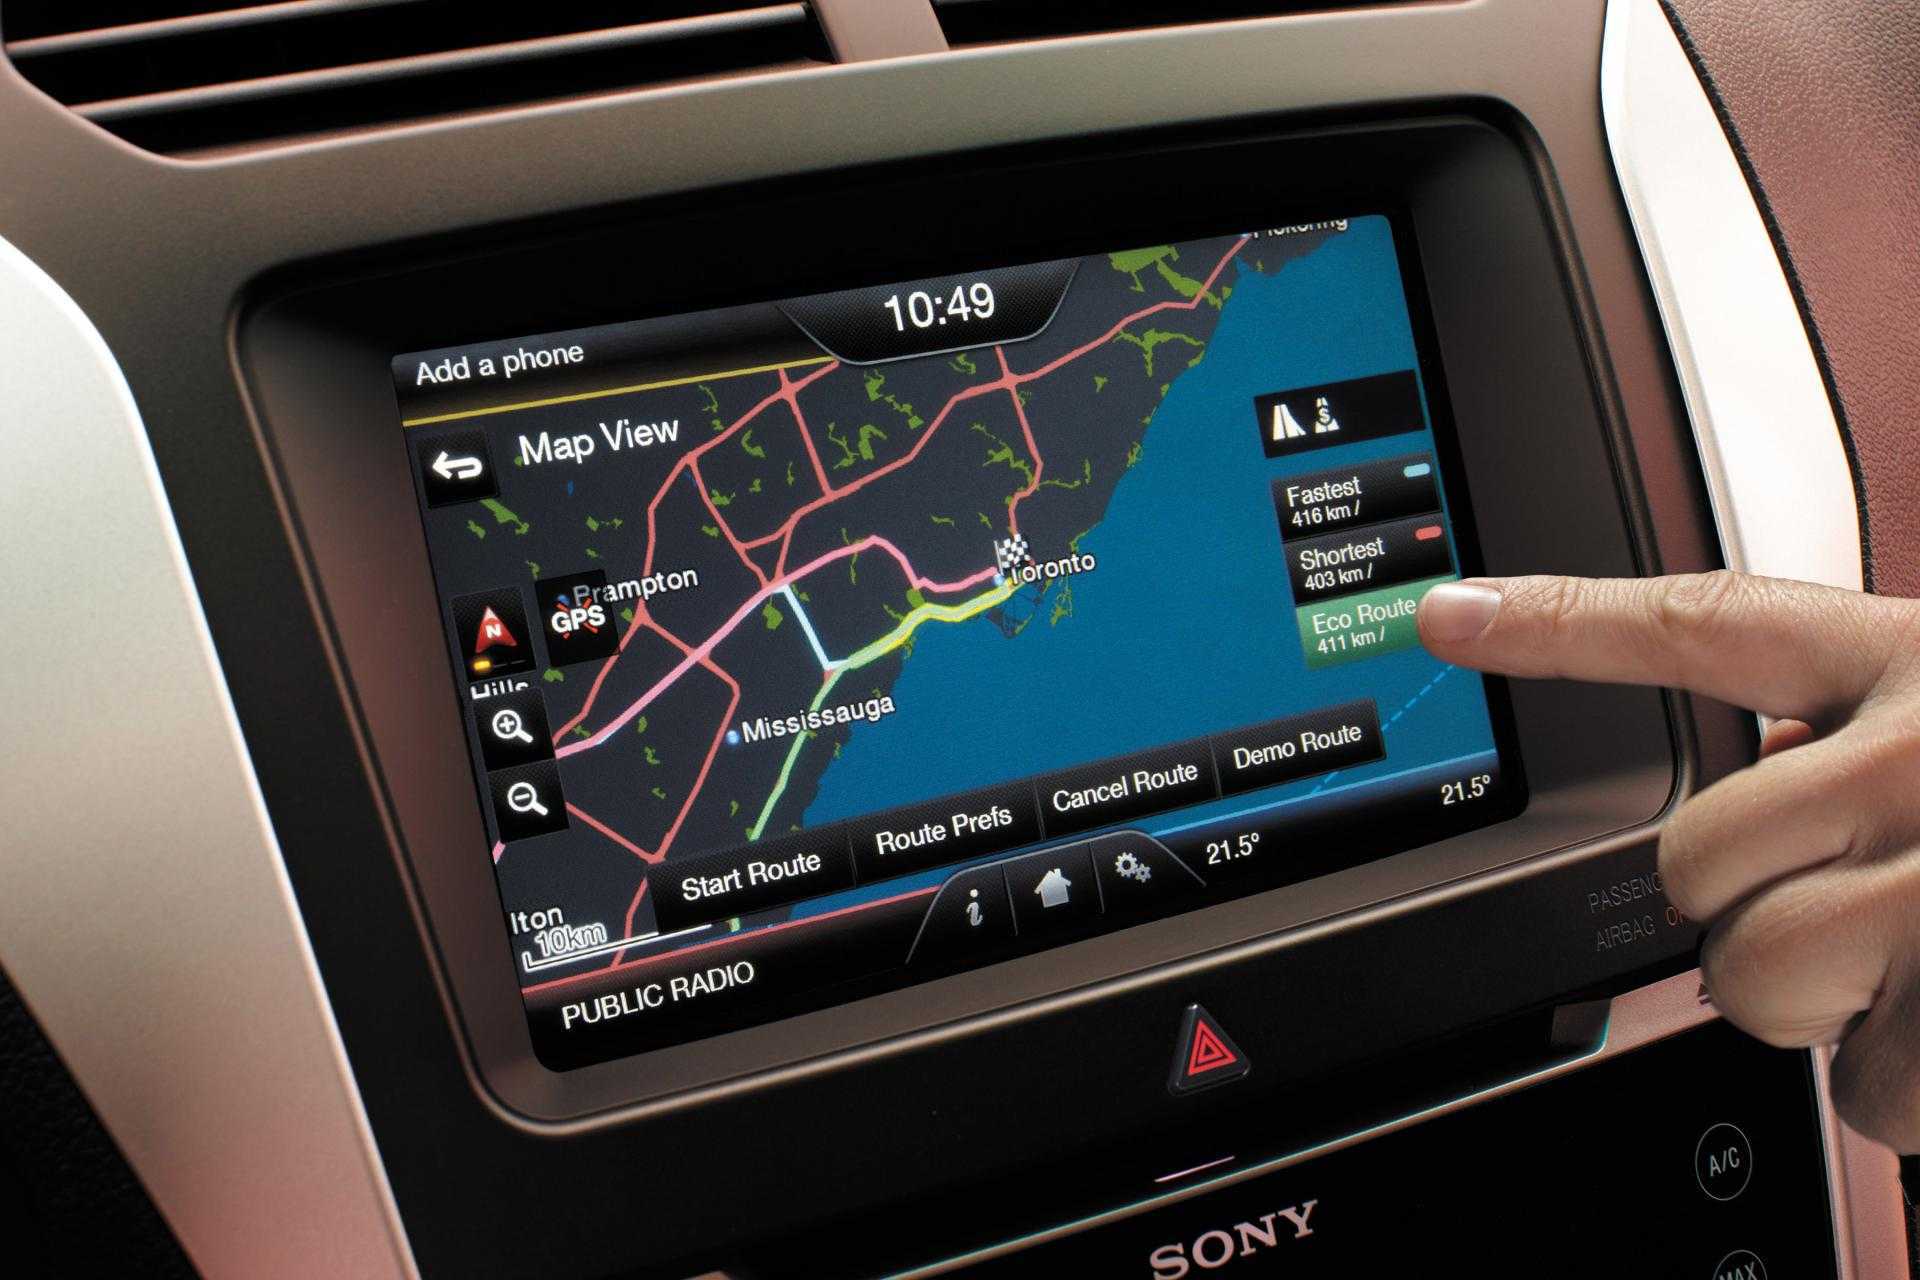 Gps навигаторы - как работает система, настройка и использование в автомобиле